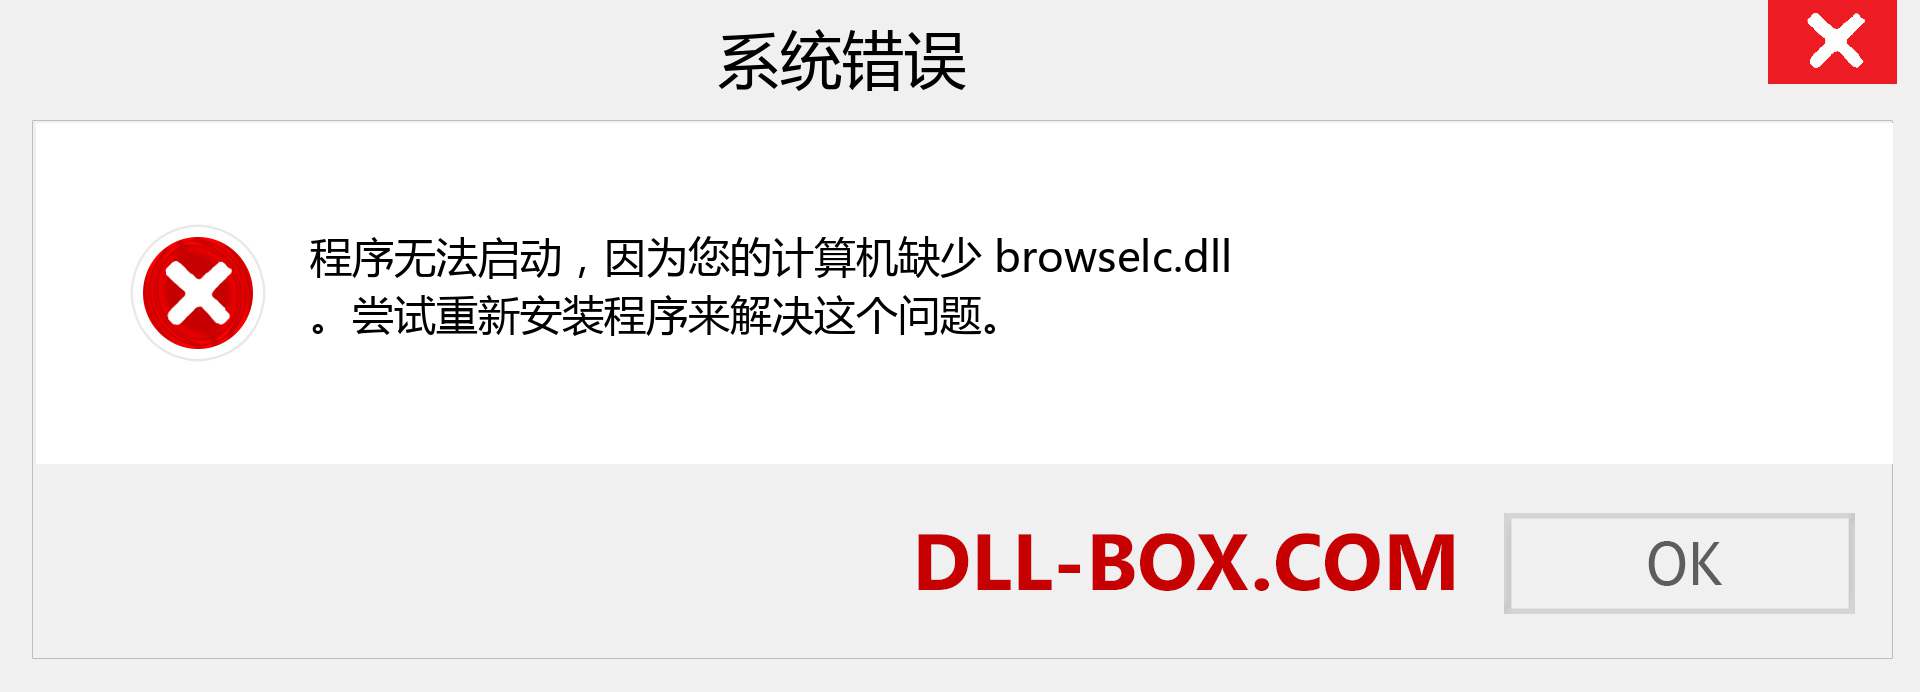 browselc.dll 文件丢失？。 适用于 Windows 7、8、10 的下载 - 修复 Windows、照片、图像上的 browselc dll 丢失错误